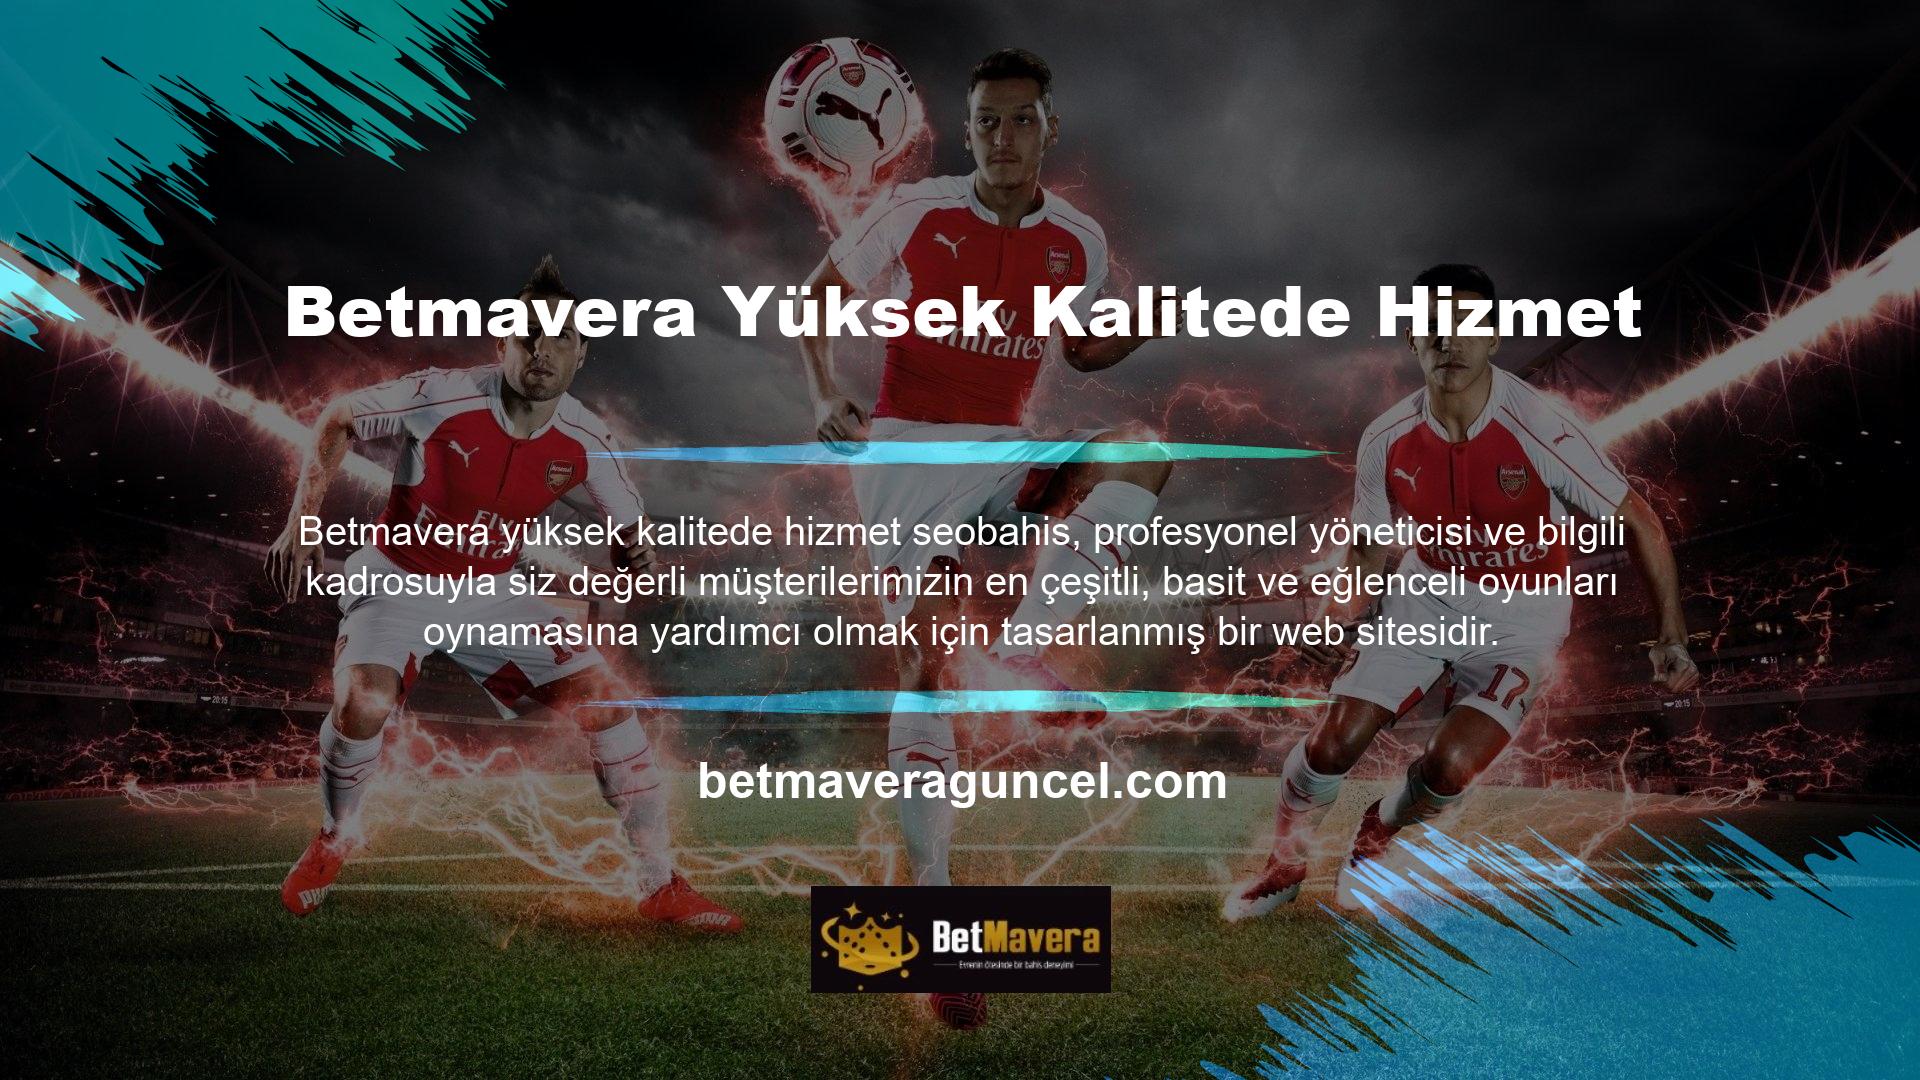 Betmavera para yatırma bonusu Türkiye'de yayınlandı